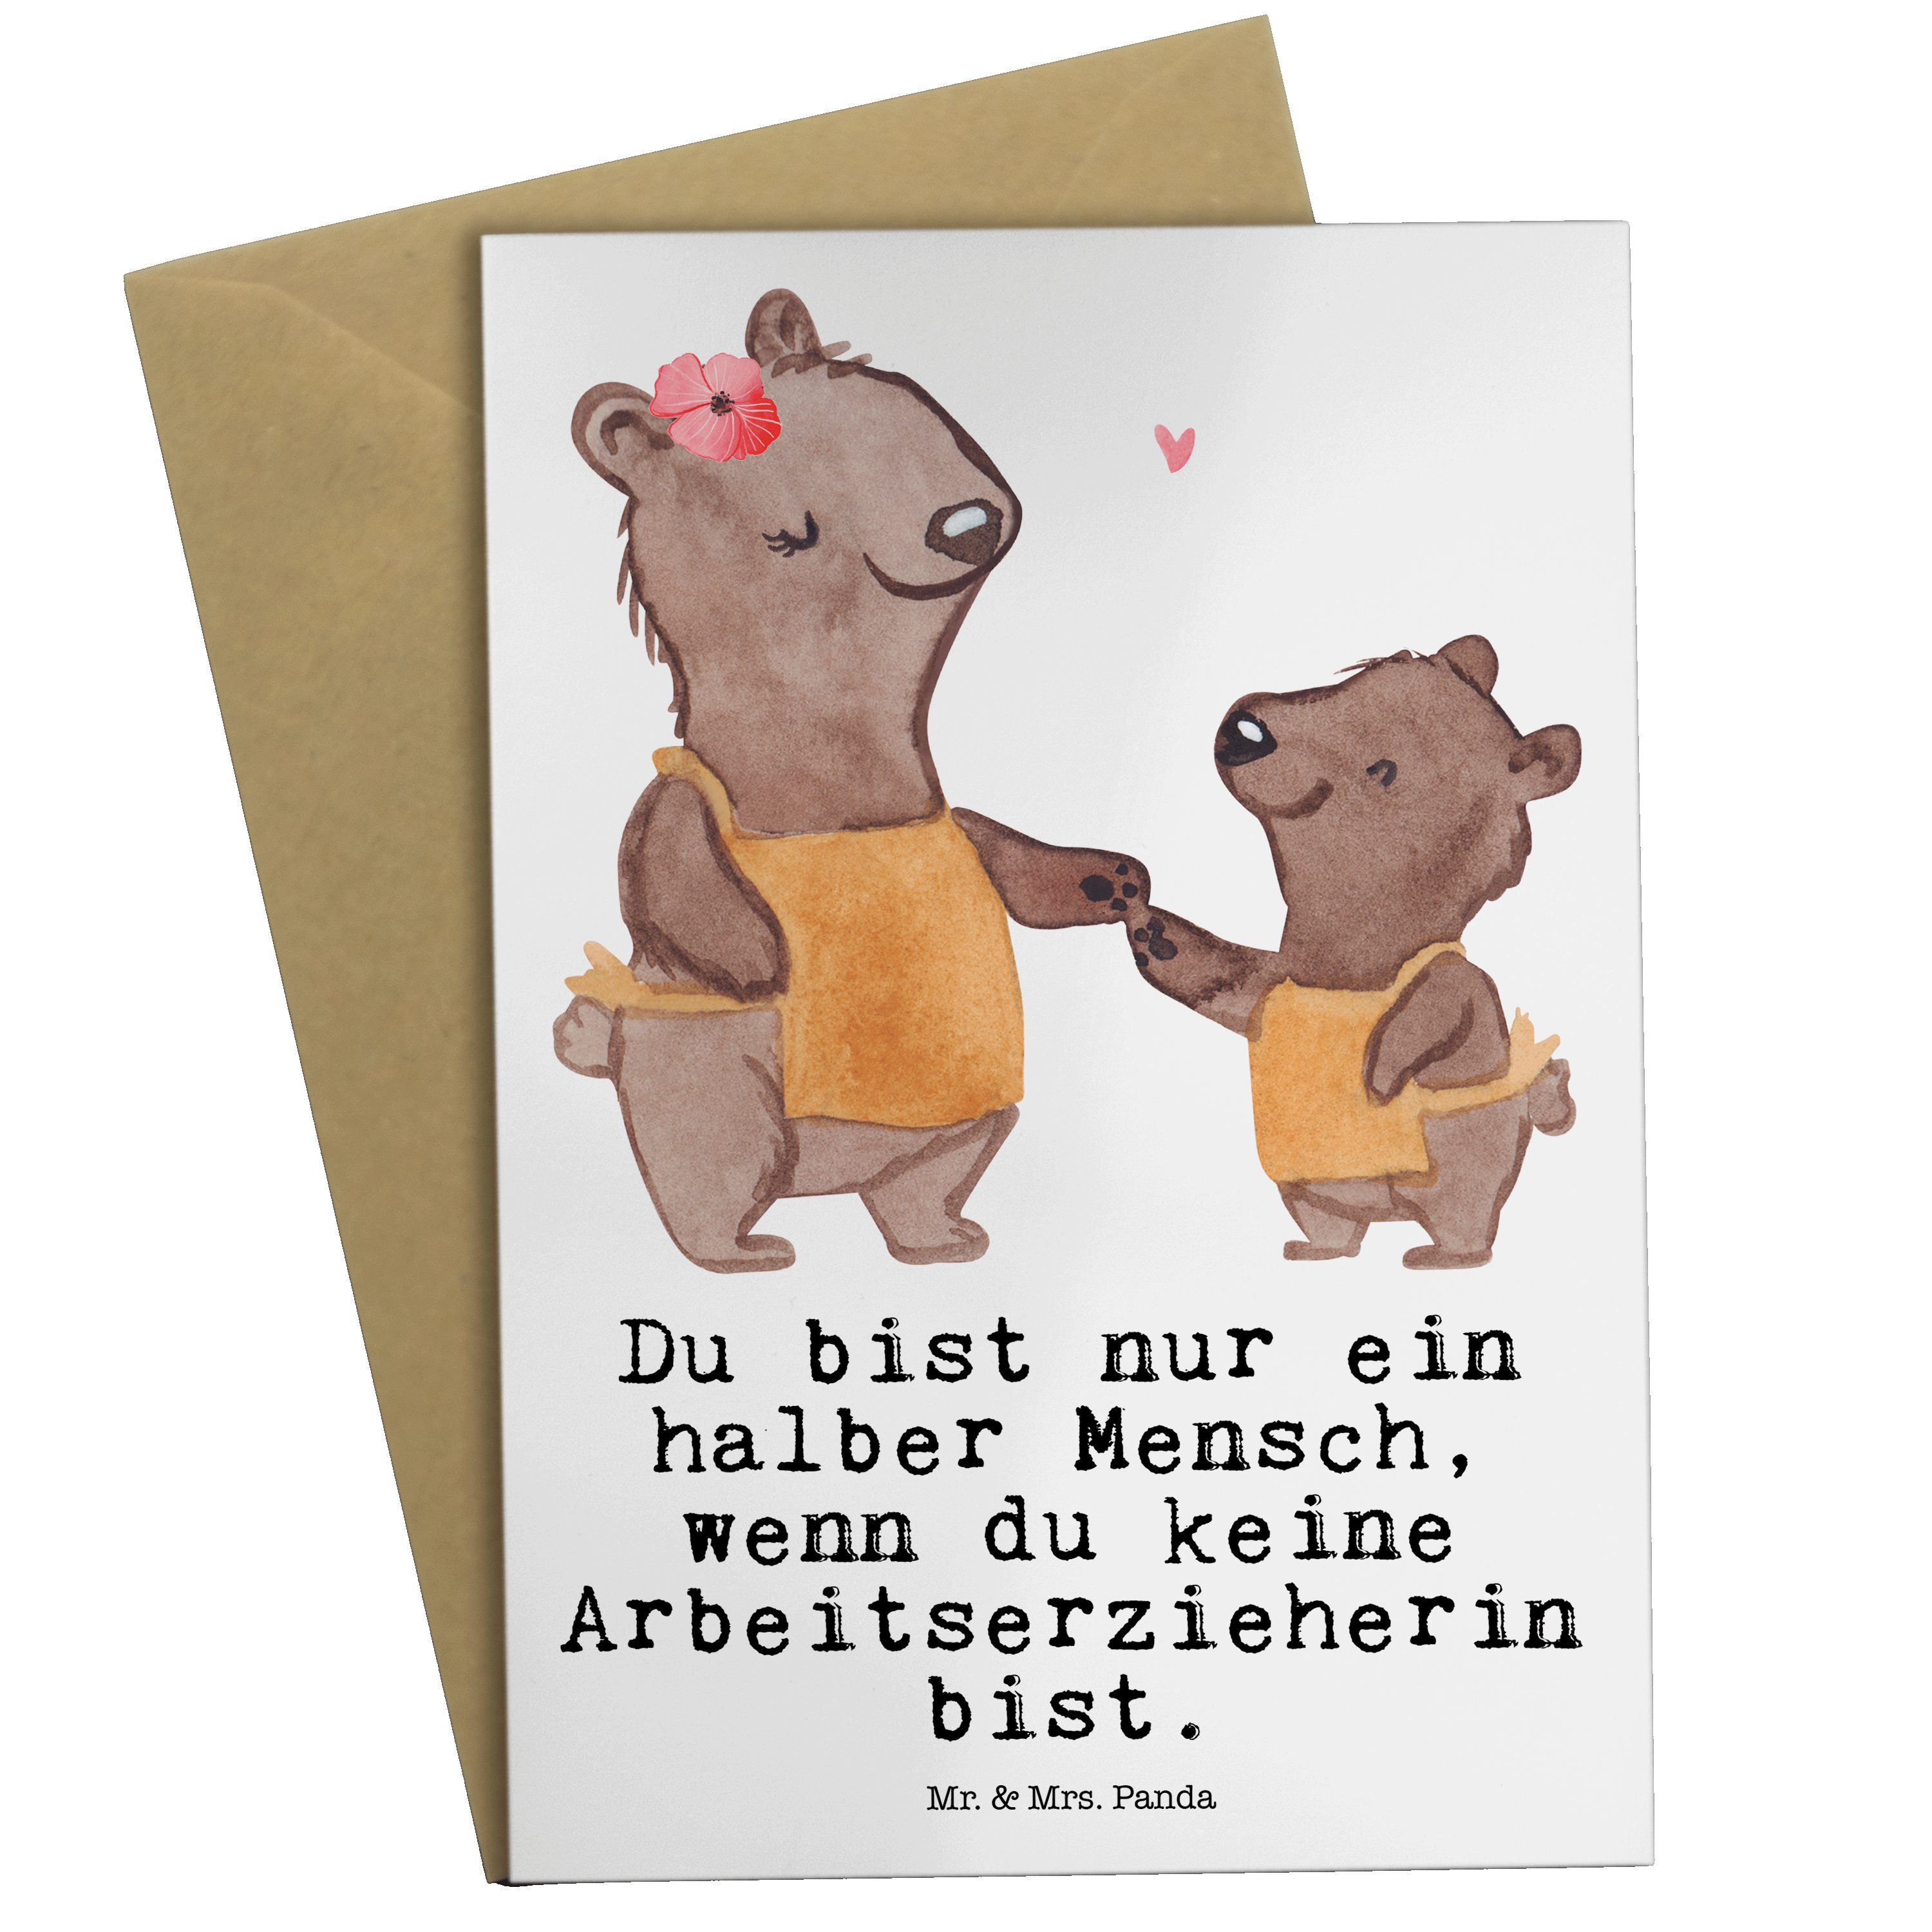 Mr. & Weiß Freunde, - Grußkarte Geschenk, Hochzei - Panda Arbeitserzieherin mit Herz Karte, Mrs